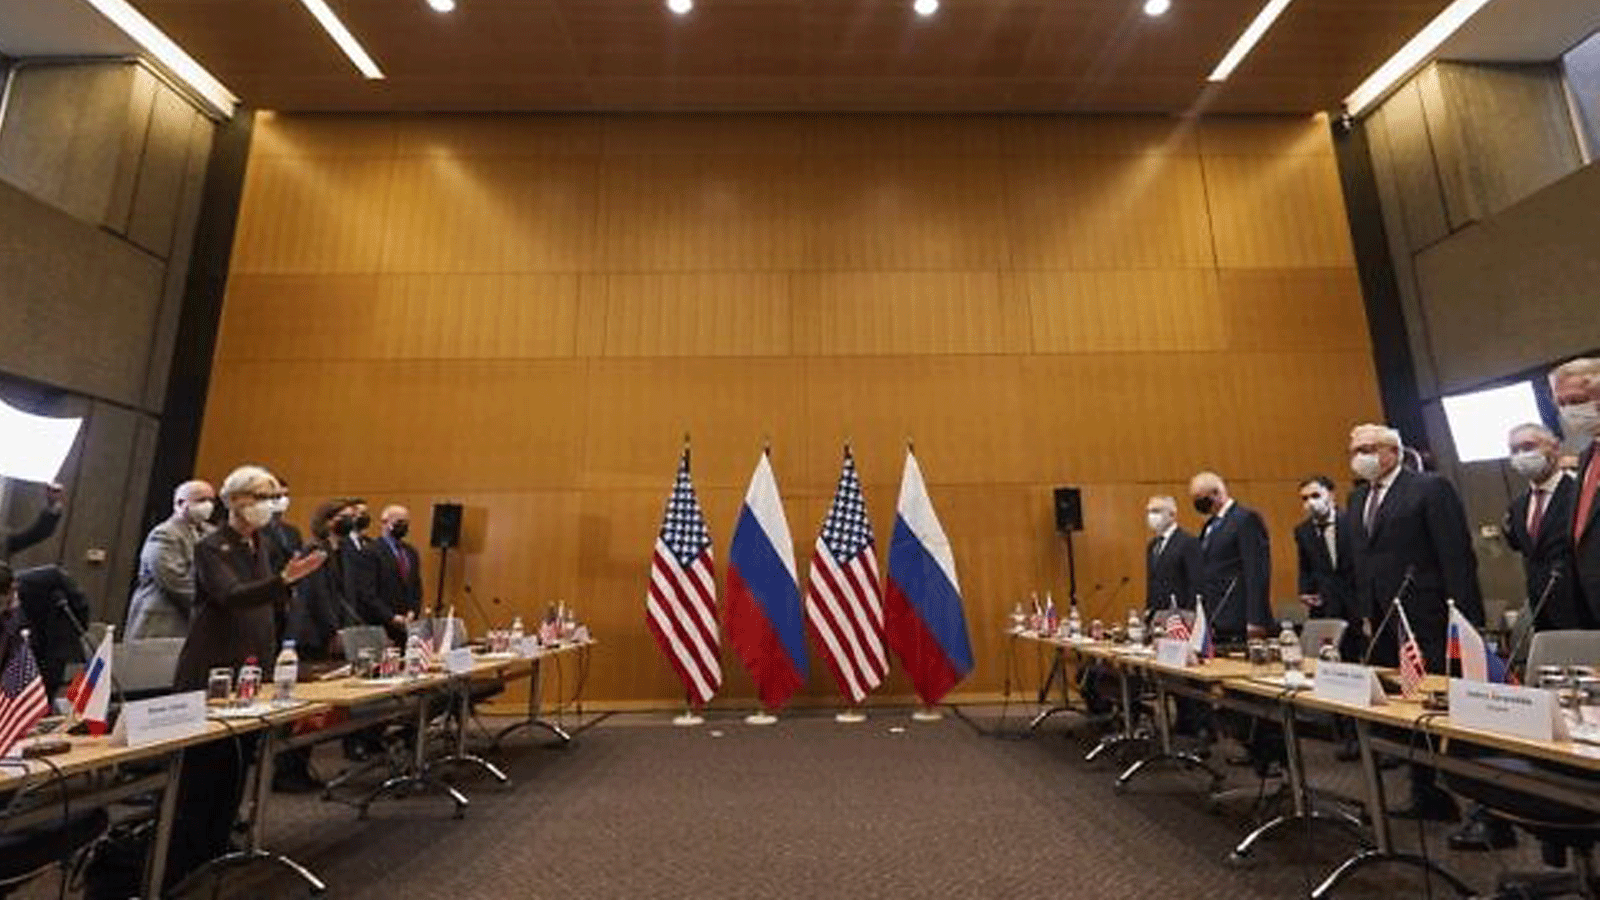 نائب وزير الخارجية الأمريكية ويندي شيرمان (إلى اليسار) ونائب وزير الخارجية الروسي سيرجي ريابكوف (يمين) يحضران محادثات أمنية حول التوترات المتصاعدة بشأن أوكرانيا، في البعثة الدائمة للولايات المتحدة، في جنيف، في 10 كانون الثاني/ يناير 2022